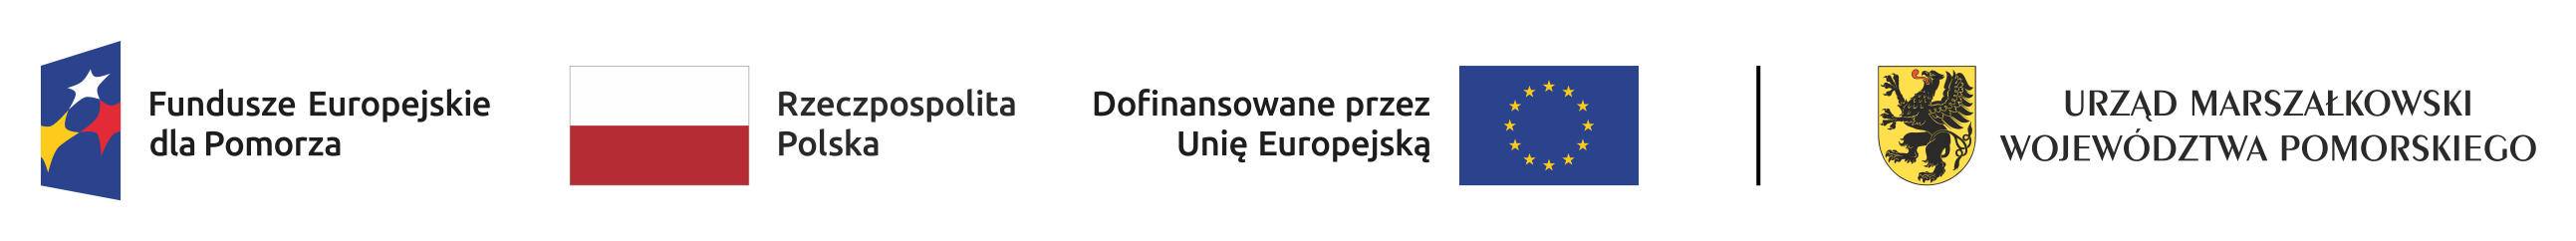 Zestawienie znaków zawierające cztery logotypy w kolejności od lewej: Znak Funduszy Europejskich dla Pomorza (złożony z symbolu graficznego i nazwy Fundusze Europejskie dla Pomorza), Znak barw Rzeczypospolitej Polskiej (złożony z barw RP oraz nazwy Rzeczpospolita Polska), Znak Unii Europejskiej (złożony z flagi Unii Europejskiej i napisu "Dofinansowane przez Unię Europejską"), Znak Urzędu Marszałkowskiego Województwa Pomorskiego (złożony z symbolu graficznego i nazwy "Urząd Marszałkowski Województwa Pomorskiego").